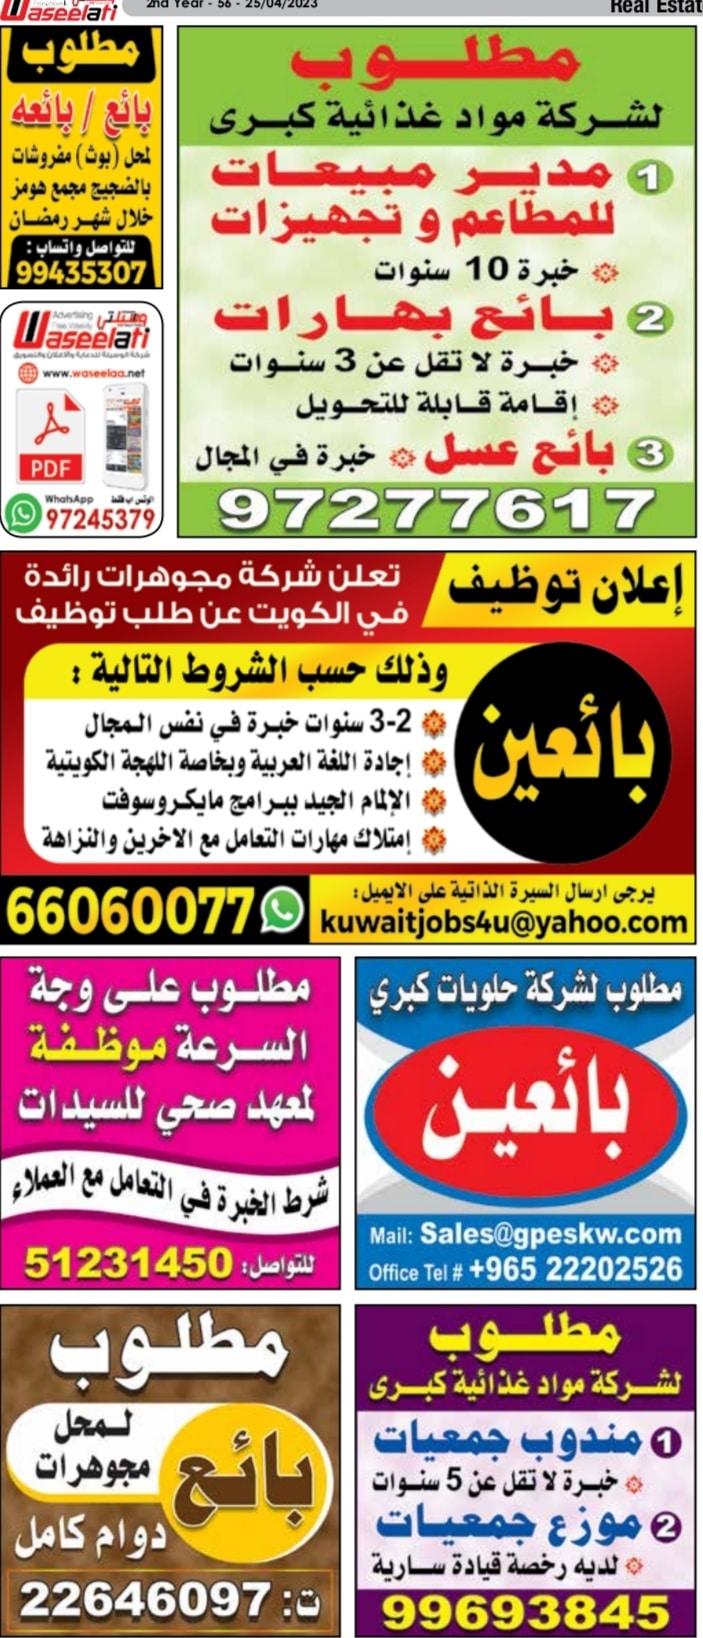 وظائف الوسيلة الكويت 28.4.20237.00